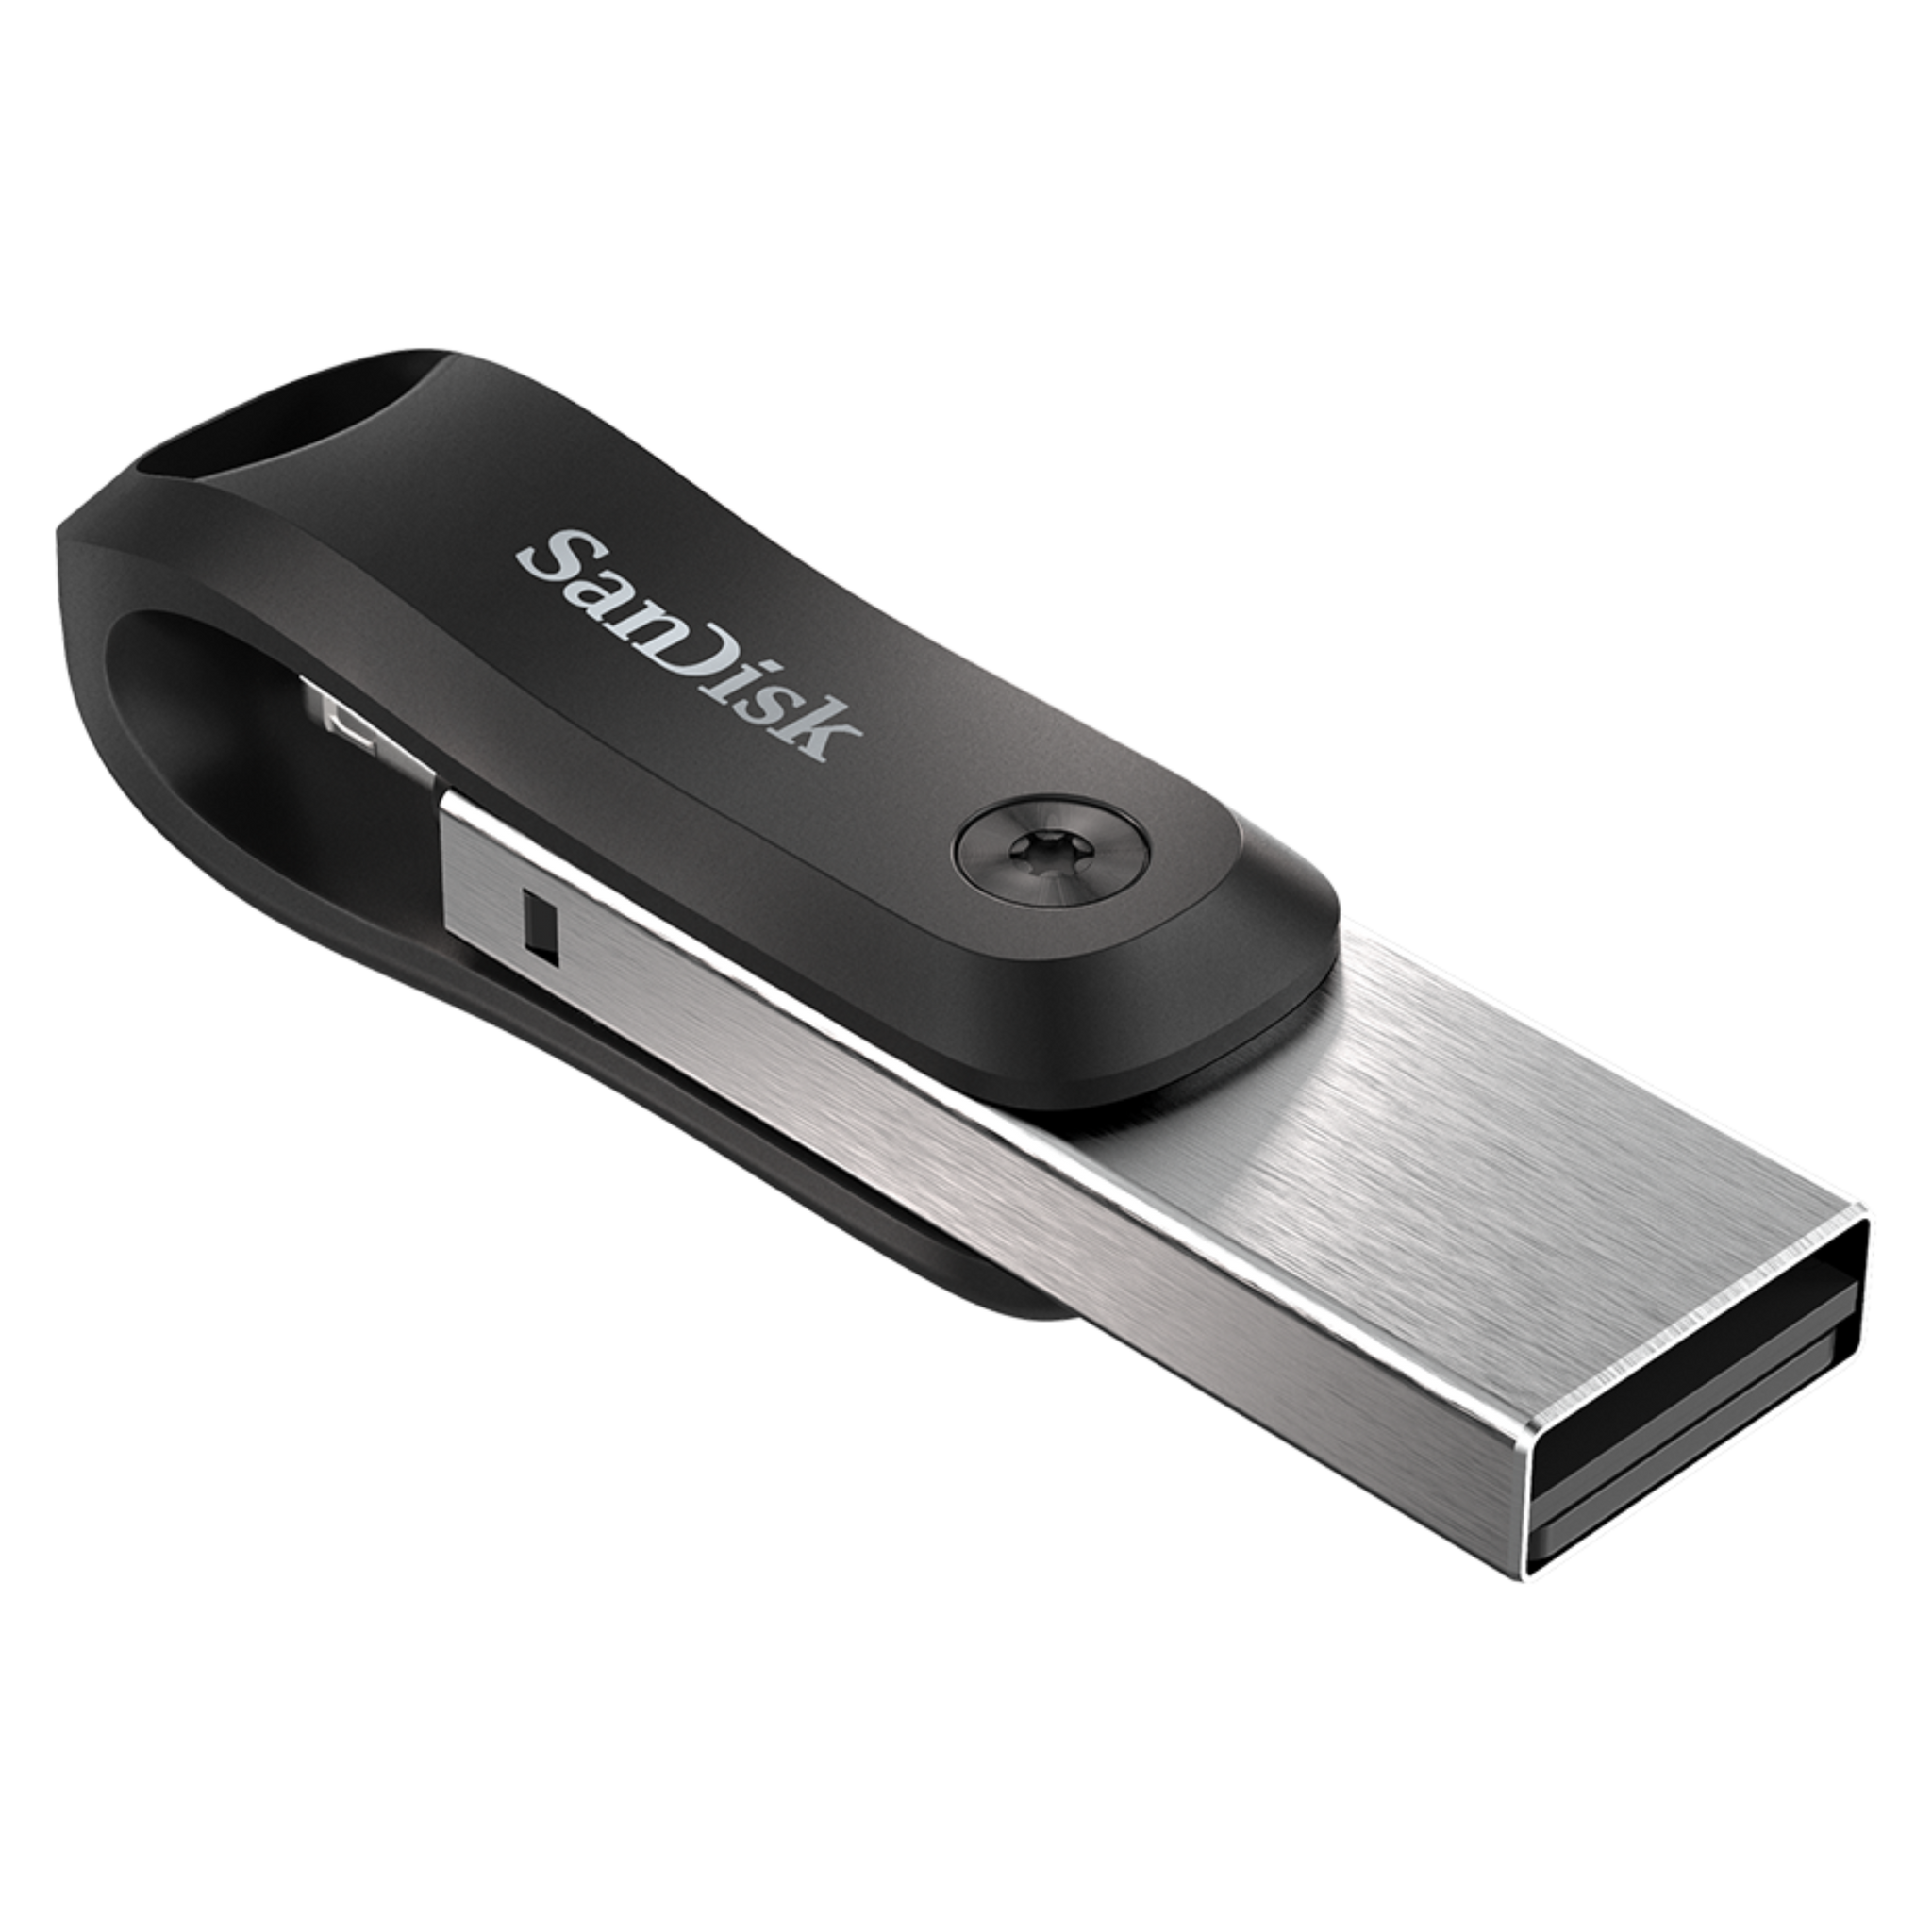 SanDisk iXpand Flash Drive Go USB 3.0 for iPhone & iPad-Data Storage-futuromic